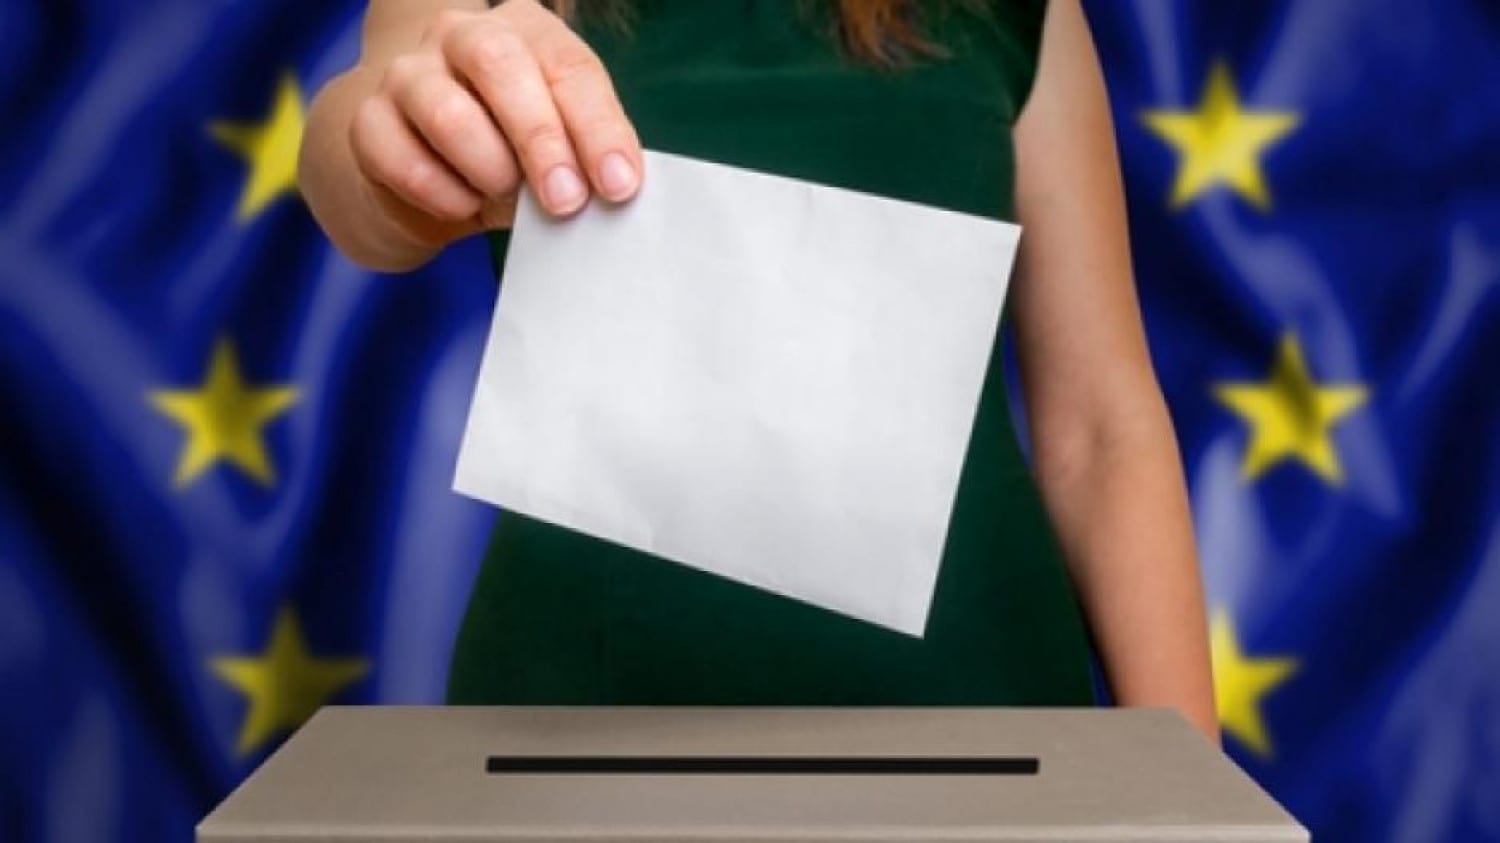 Χανιά: Άσκηση εκλογικού δικαιώματος για τους Ευρωπαίους πολίτες . Από το Τμήμα Δημοτικής Κατάστασης της Δ/νσης .....